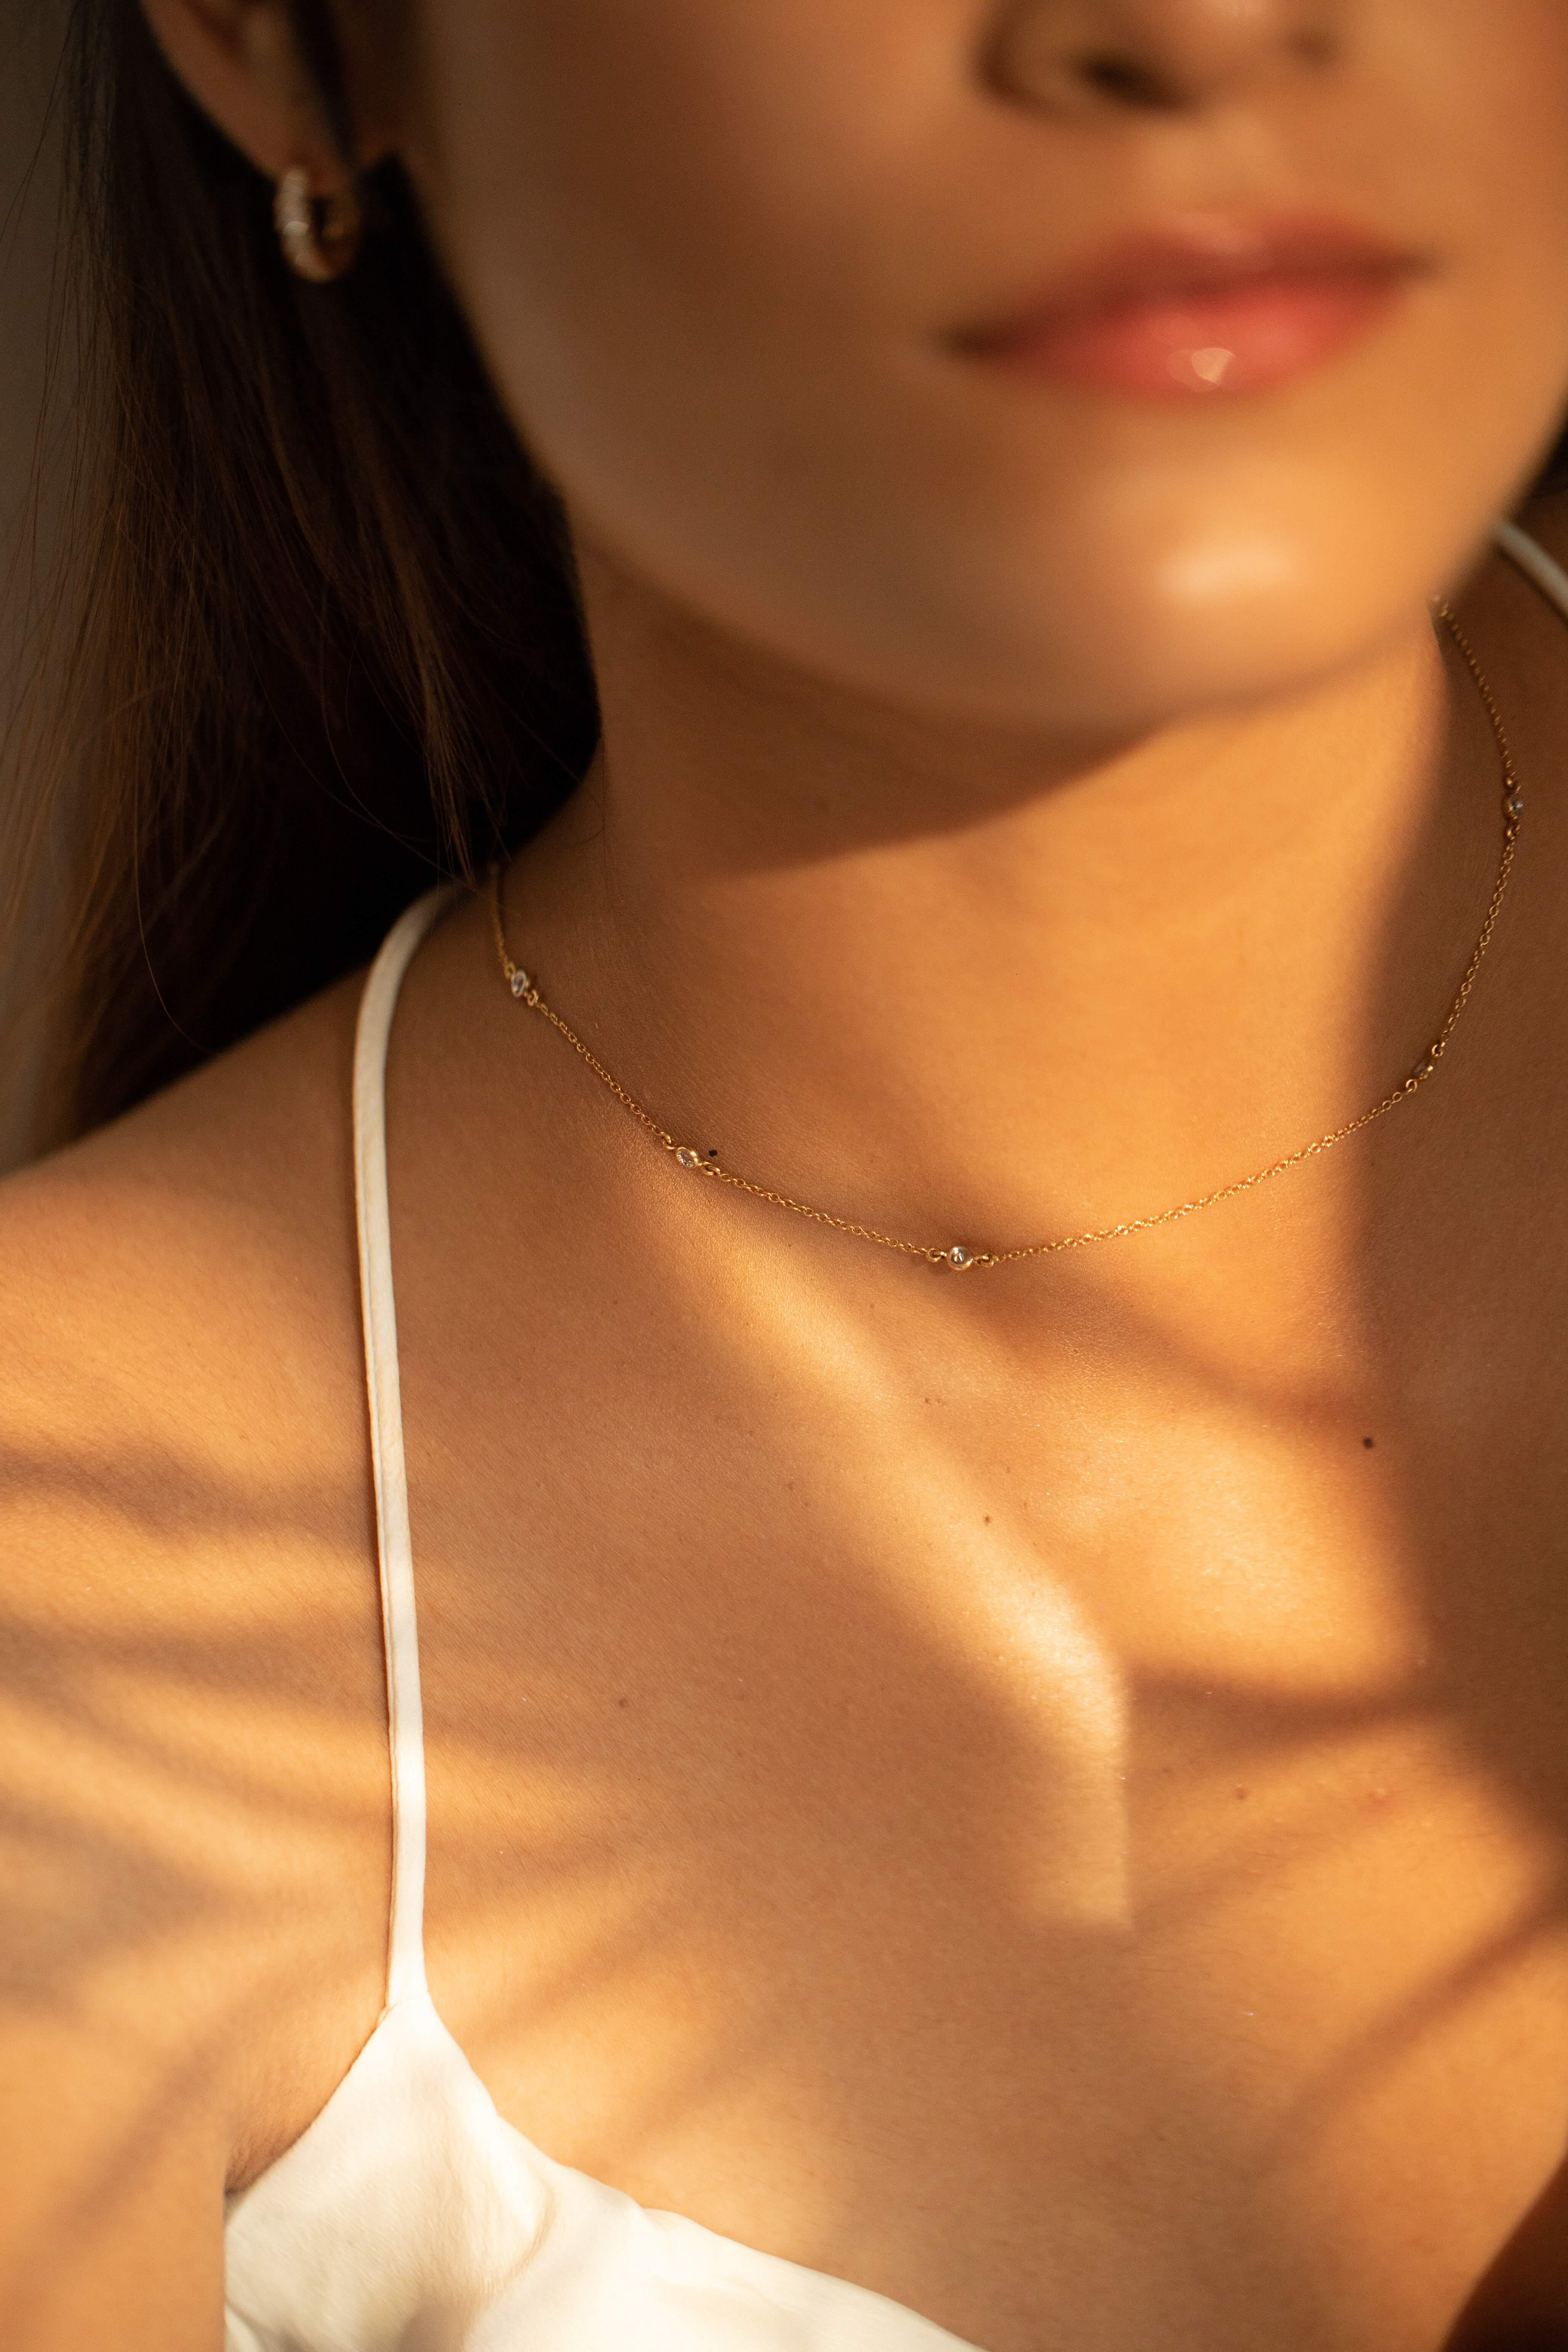 Diamant-Halskette aus 18 Karat Gold, besetzt mit Diamanten mit rundem Schliff.
Ergänzen Sie Ihren Look mit dieser eleganten Diamantperlenkette. Dieses atemberaubende Schmuckstück wertet einen Freizeitlook oder ein elegantes Outfit sofort auf. Bequem